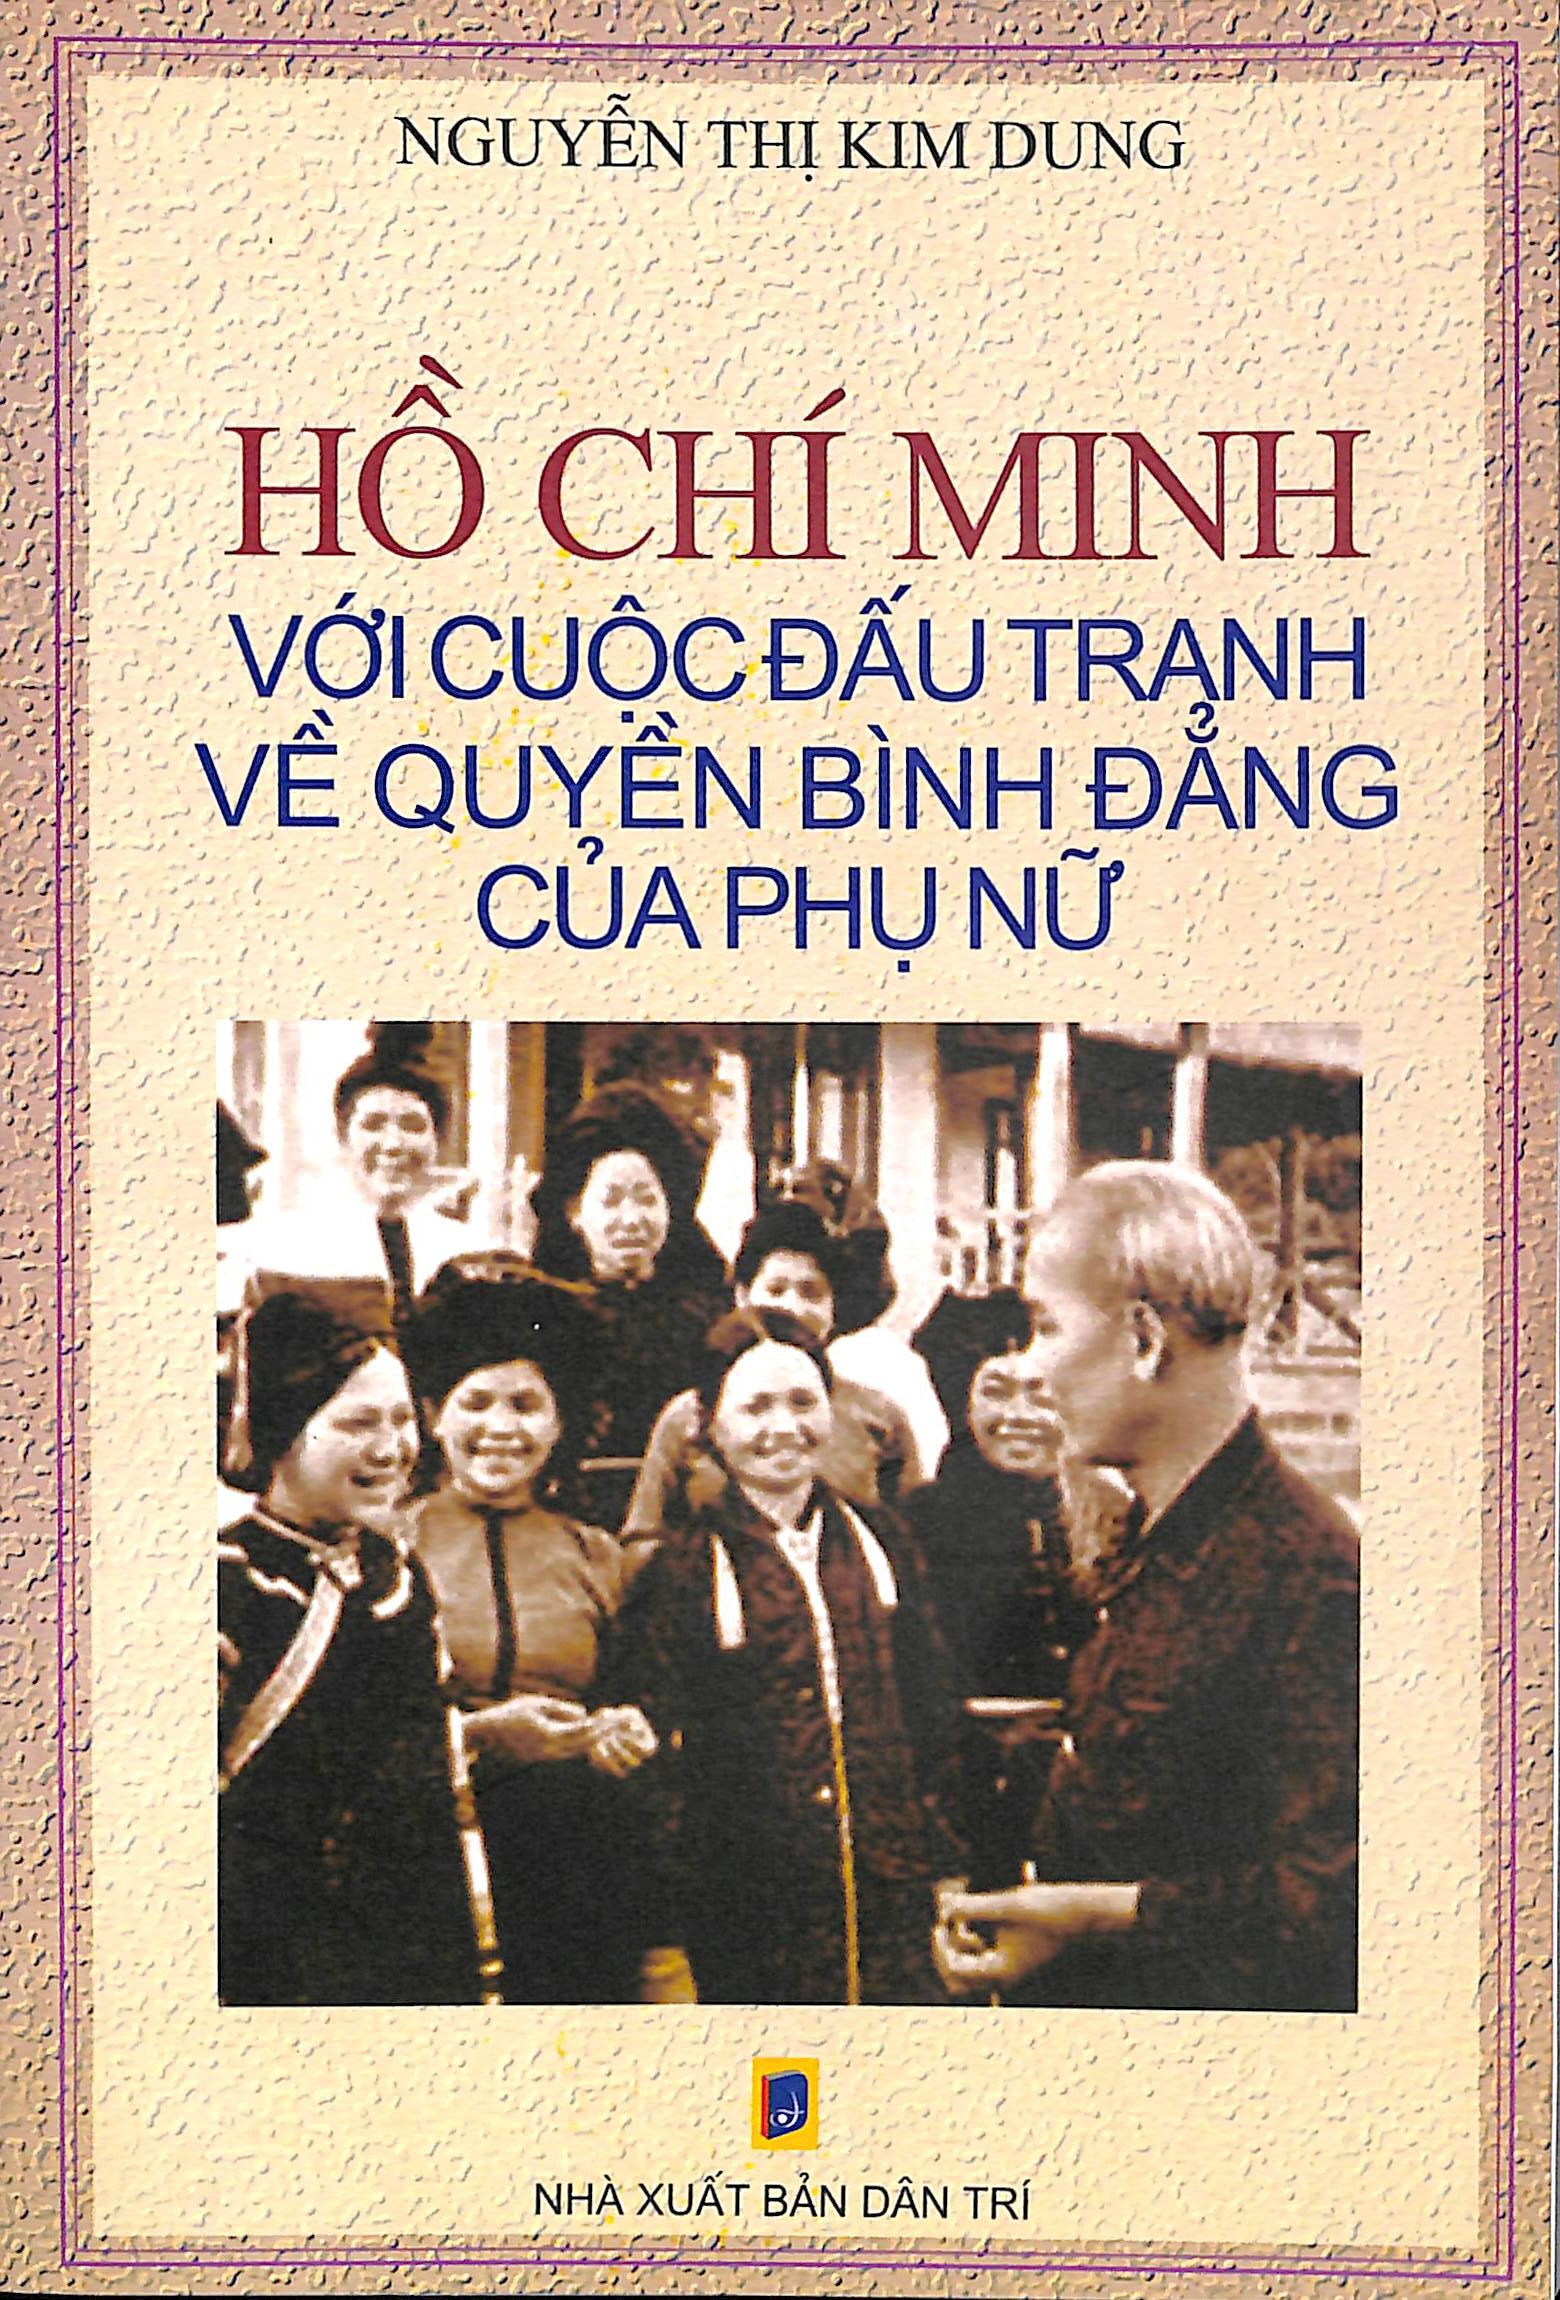 Hồ Chí Minh với cuộc đấu tranh về quyền bình đẳng của phụ nữ